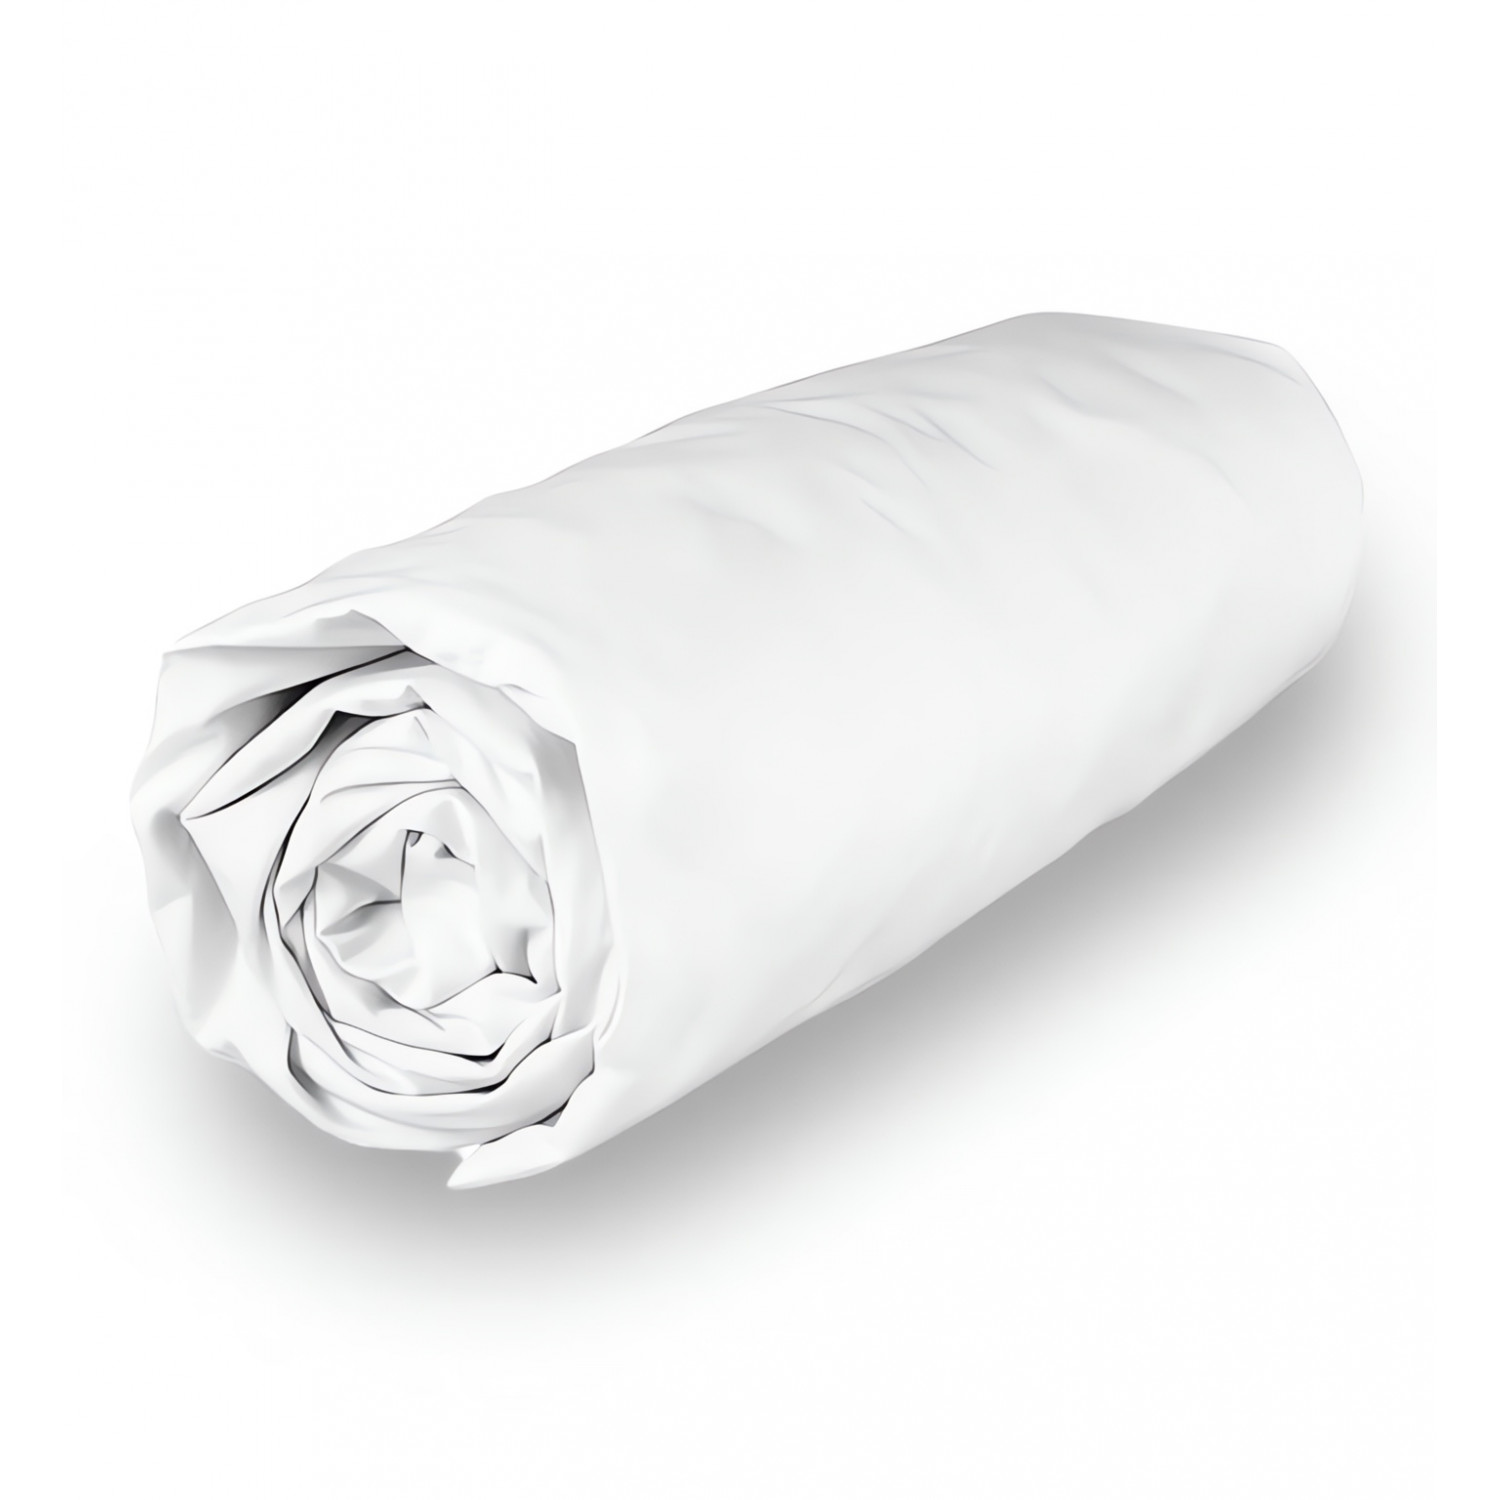 Drap housse en coton 160x200 cm PERCALE blanc, par Soleil d'ocre